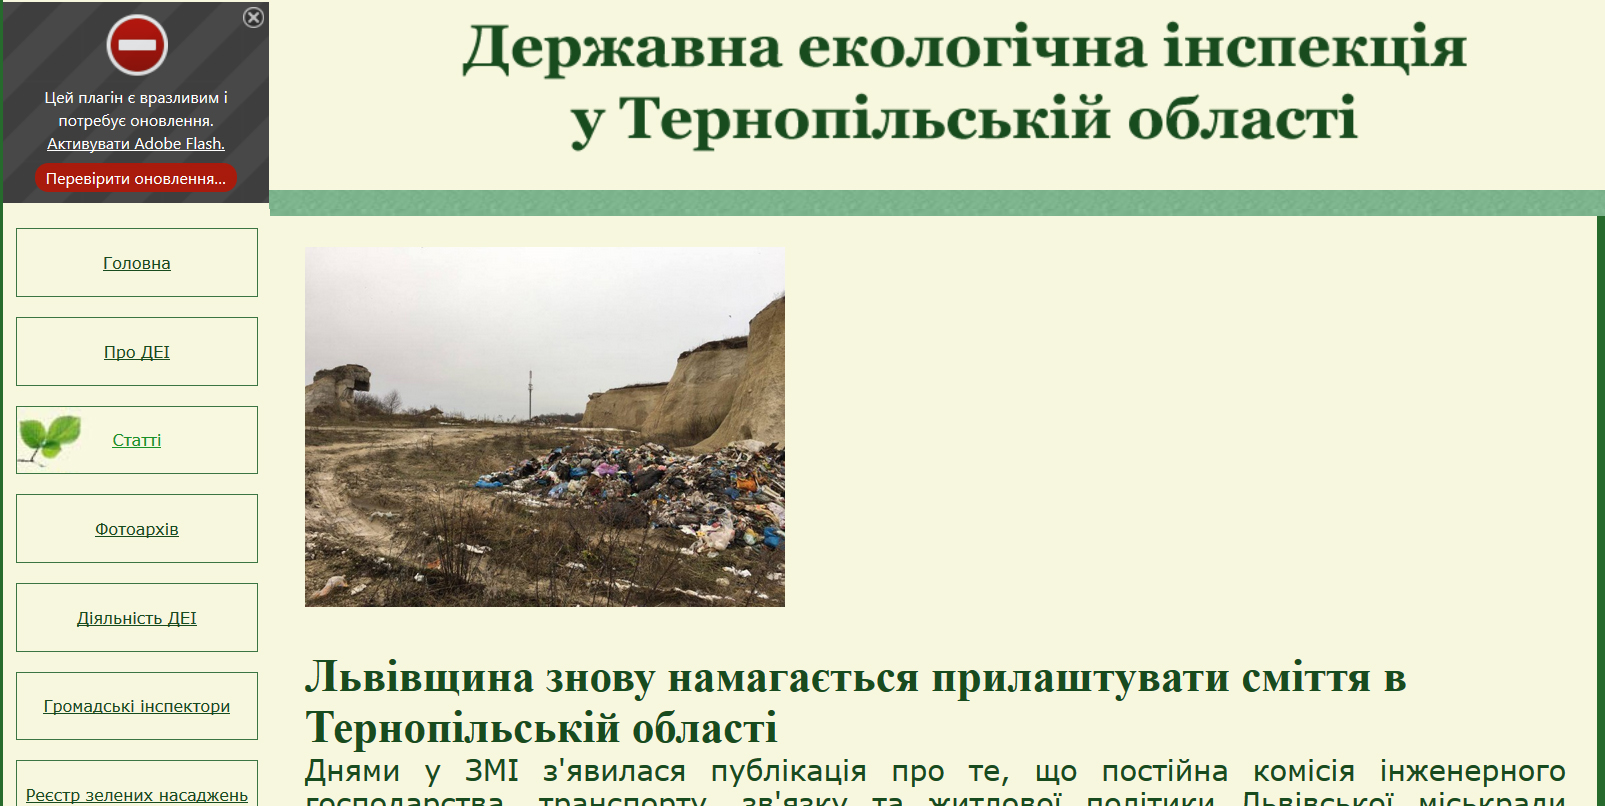 Тернопольская экоинспекция - весьма категорична